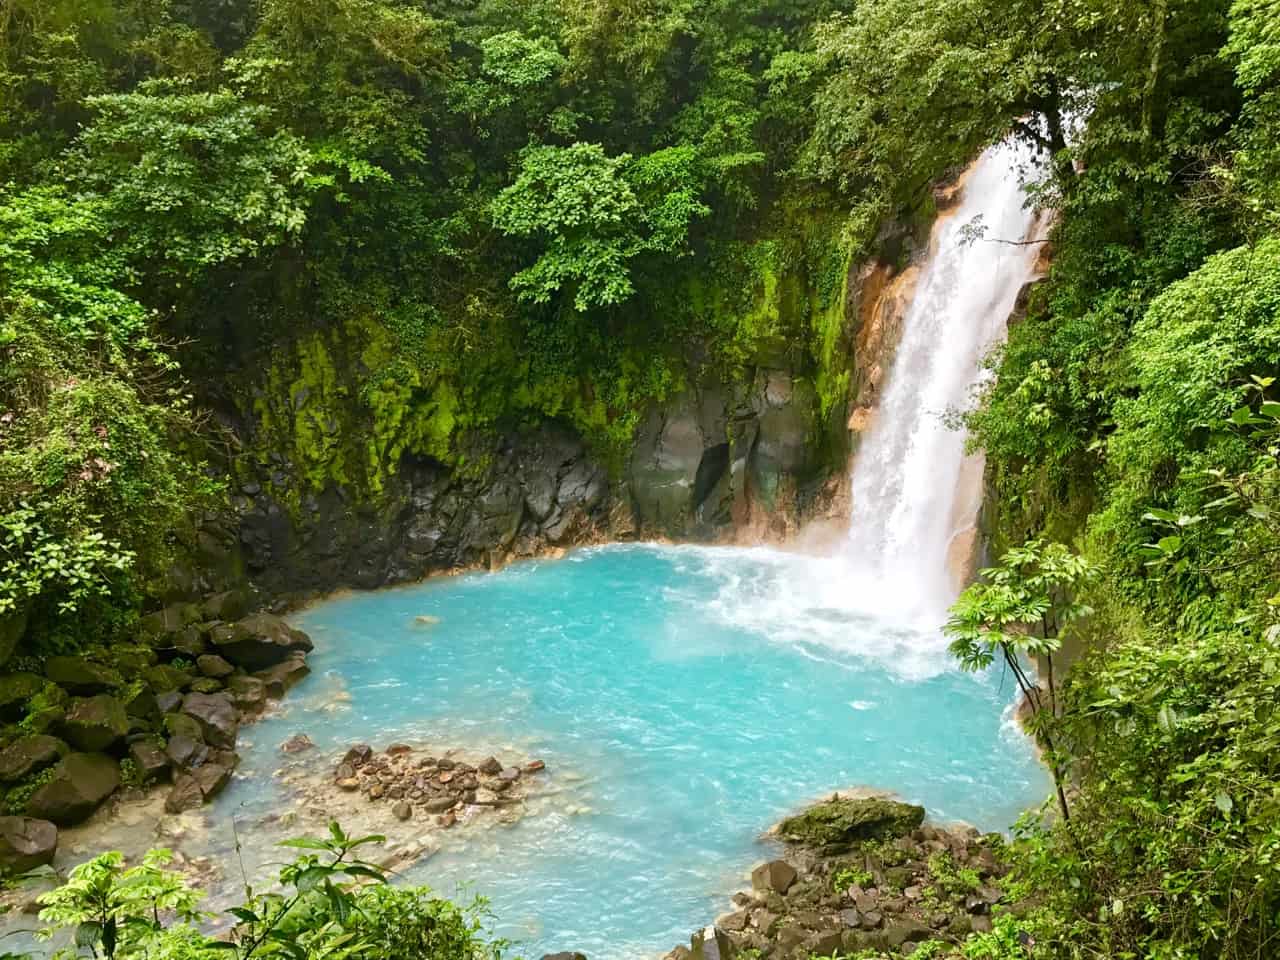  La cascata Rio Celeste si tuffa in una piscina blu latte al Tenorio Volcano National Park, uno dei parchi meno visitati in Costa Rica.